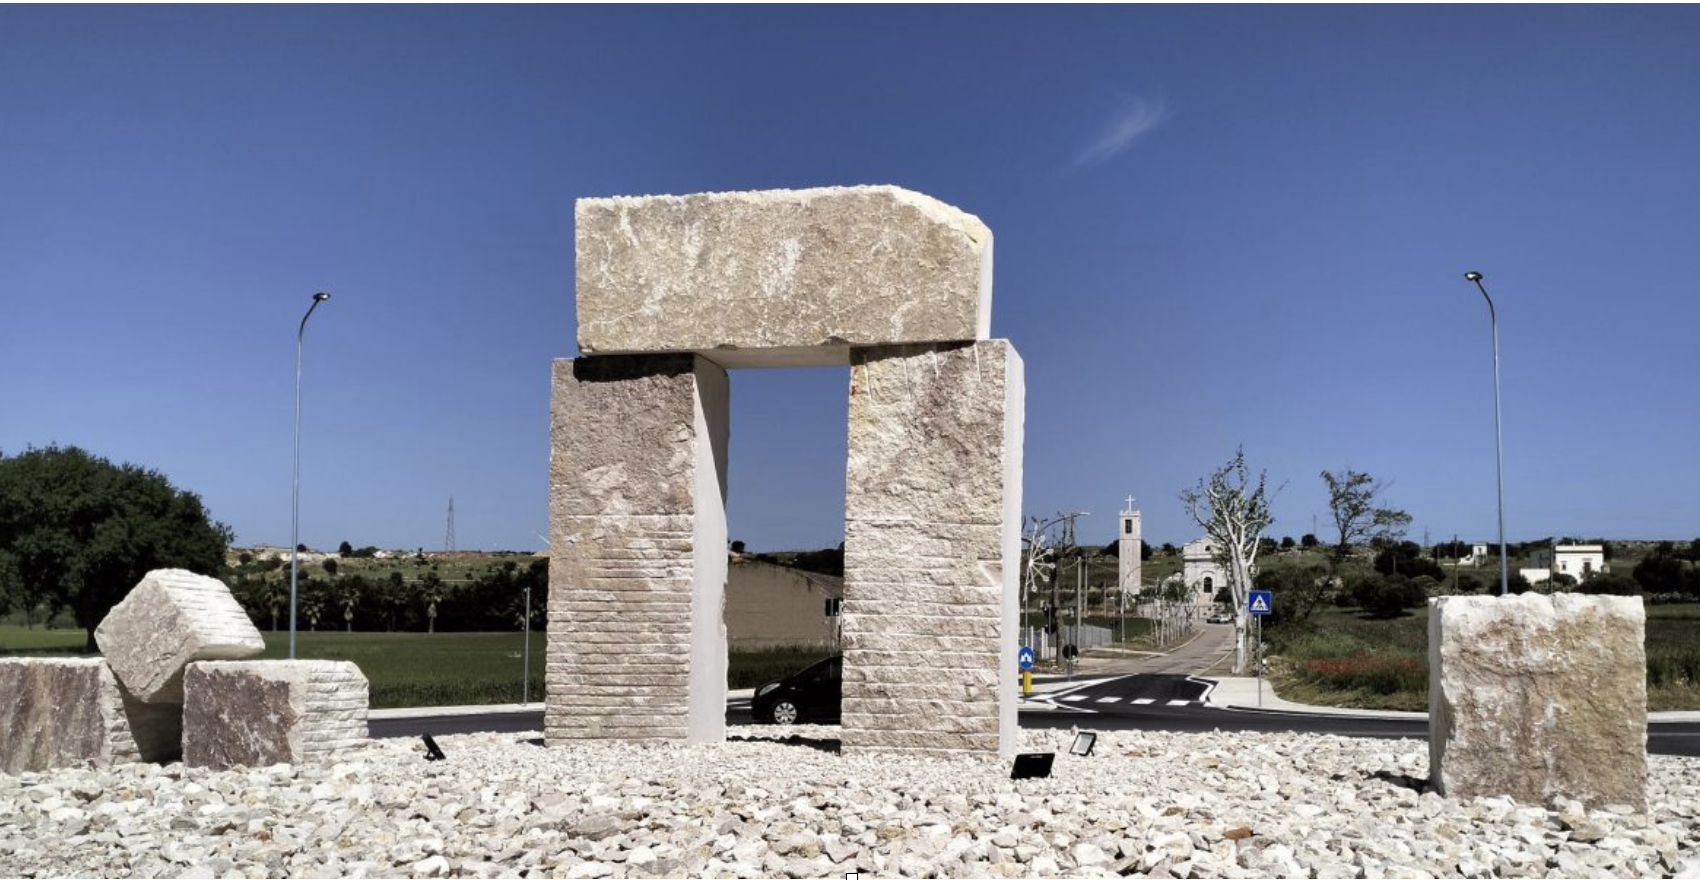 Apricena, capitale della pietra, ha dedicato l’imponente “porta delle cave” a Claudio D’Amato Guerrieri, fondatore della scuola di architettura del politecnico